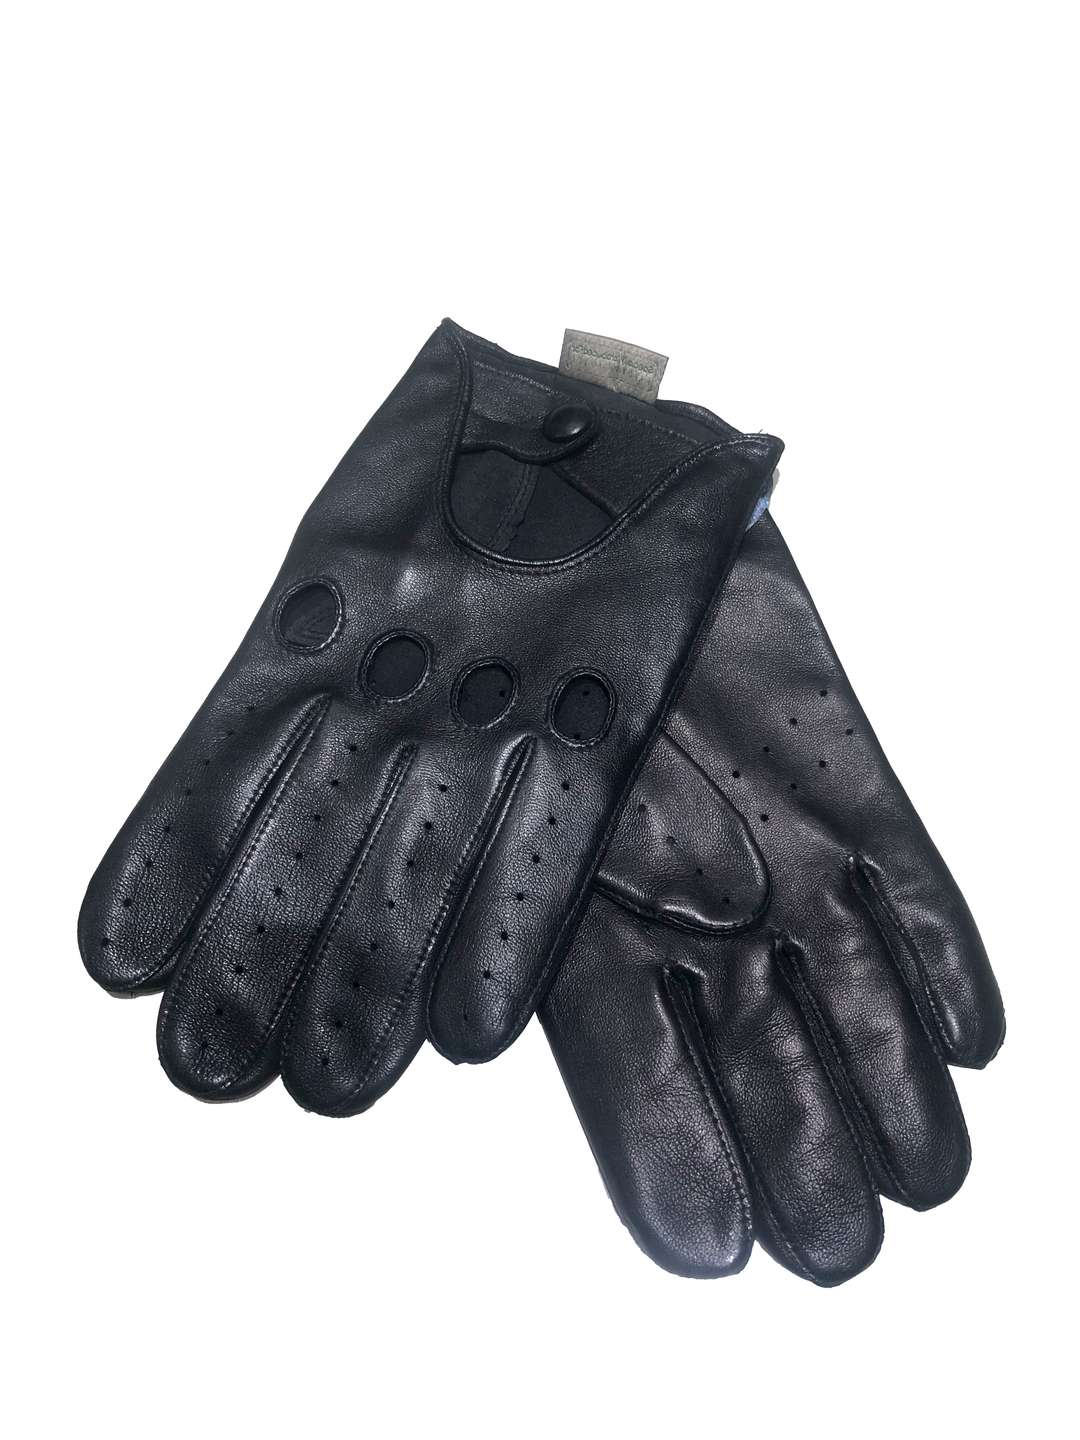 RH Handsker 400162 – Leder – Fahrerhandschuh – Schwarz